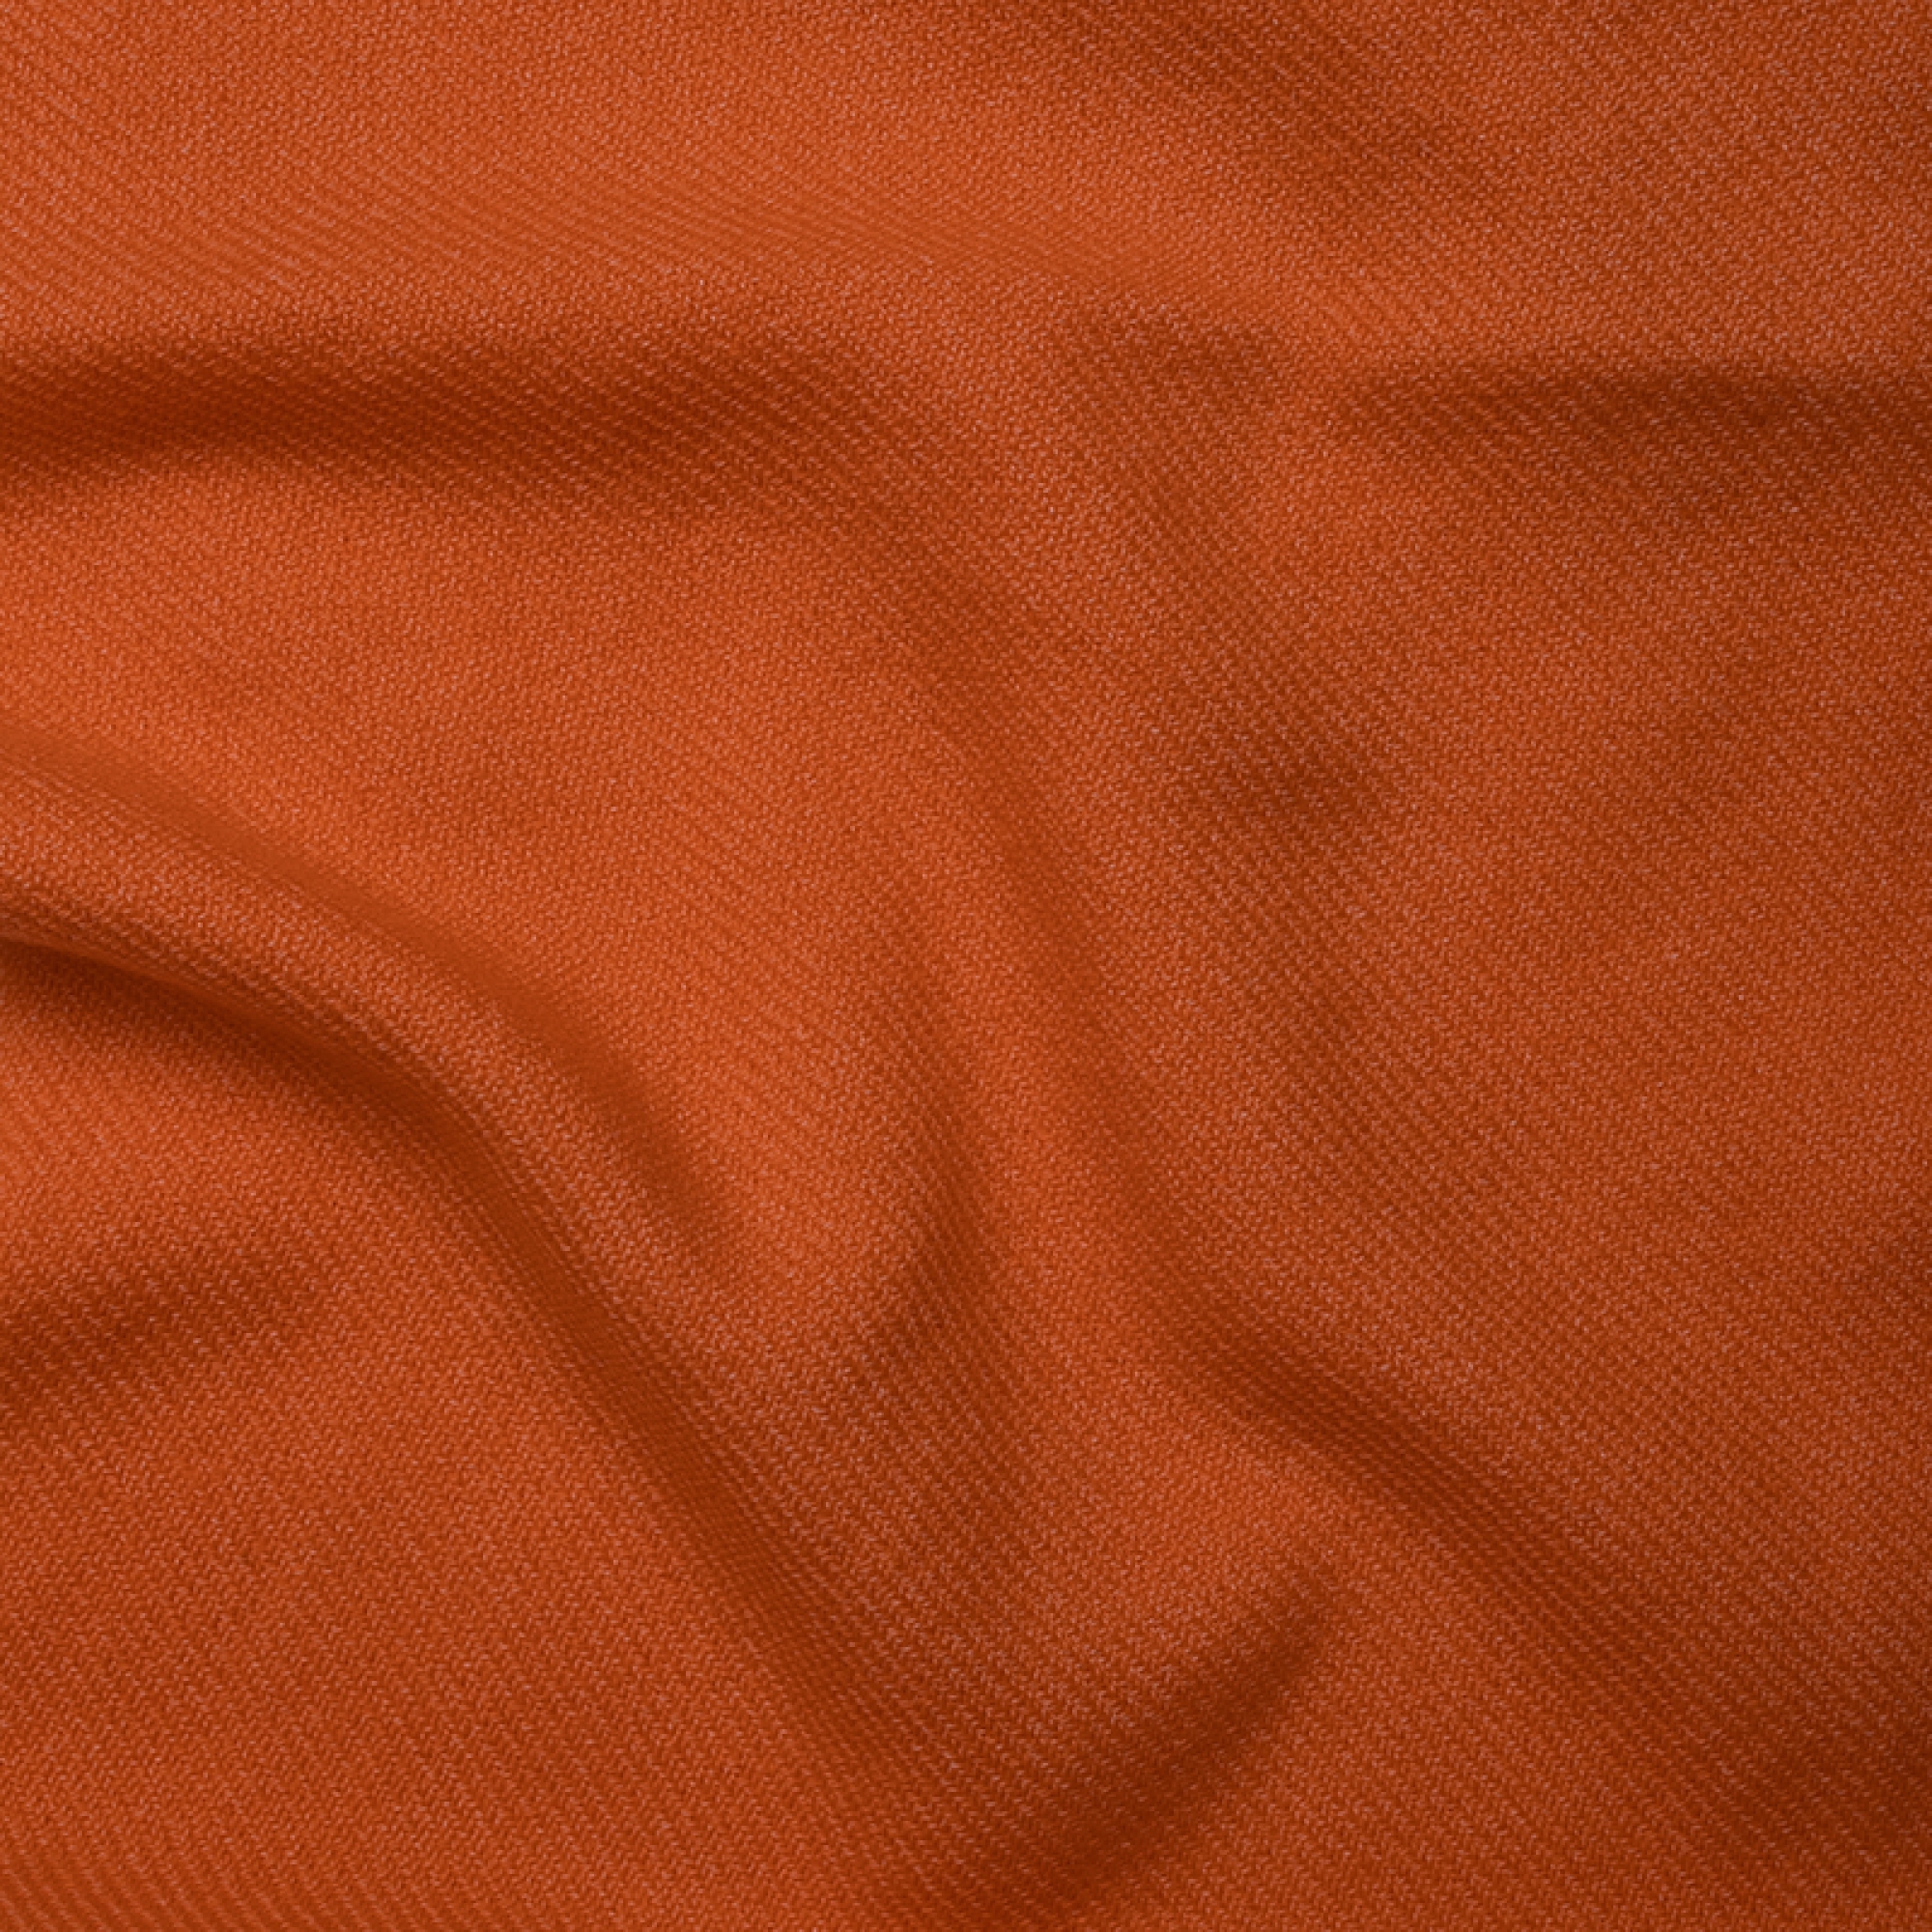 Cashmere accessori cocooning frisbi 147 x 203 arancio 147 x 203 cm